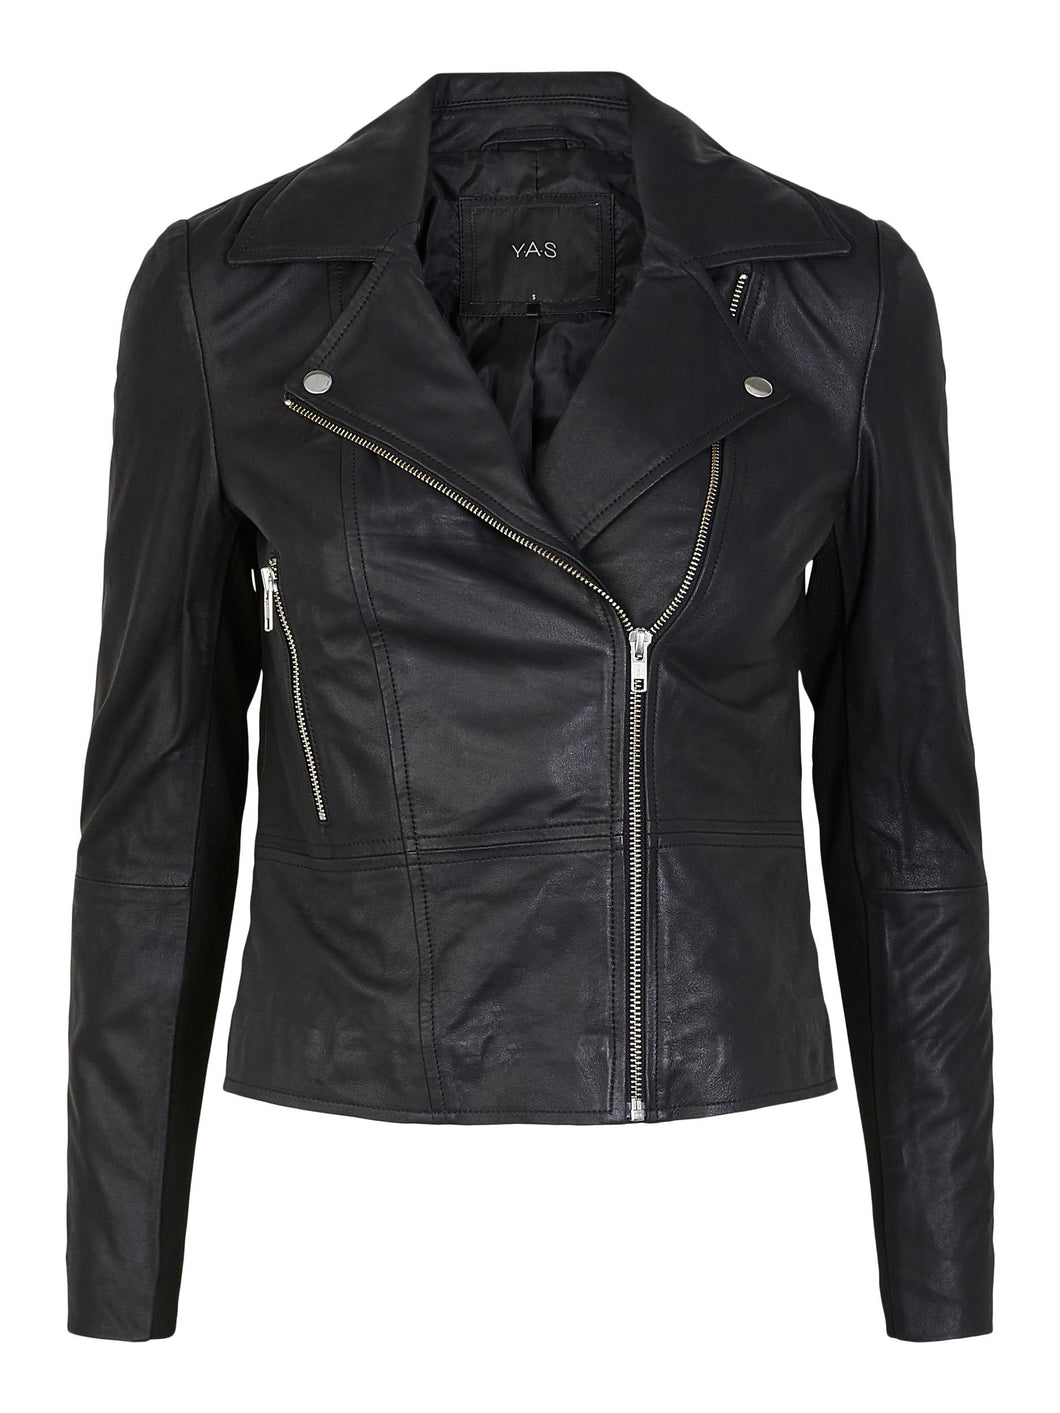 YASSOPHIE Leather Jacket, Black